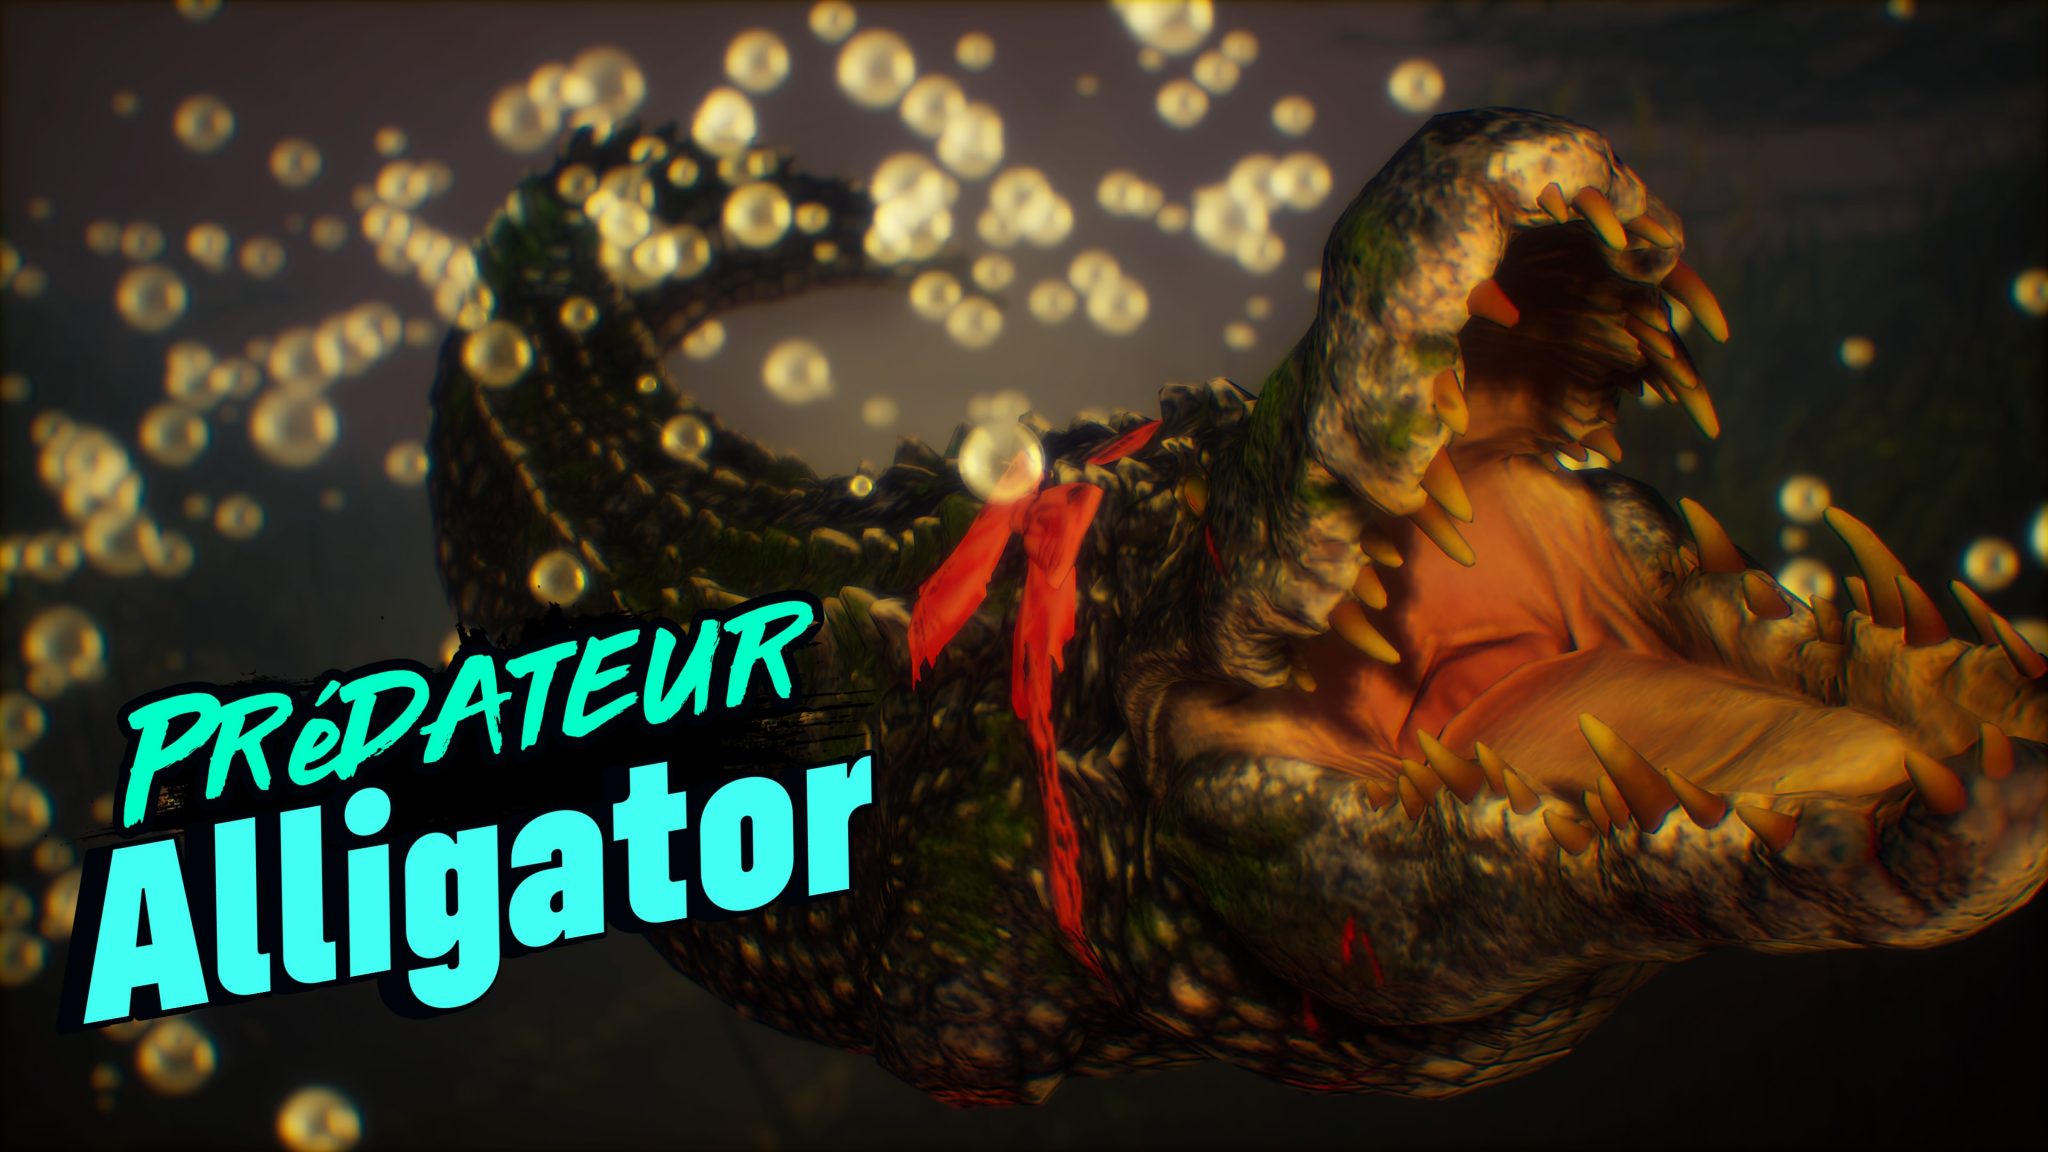 Maneater alligator